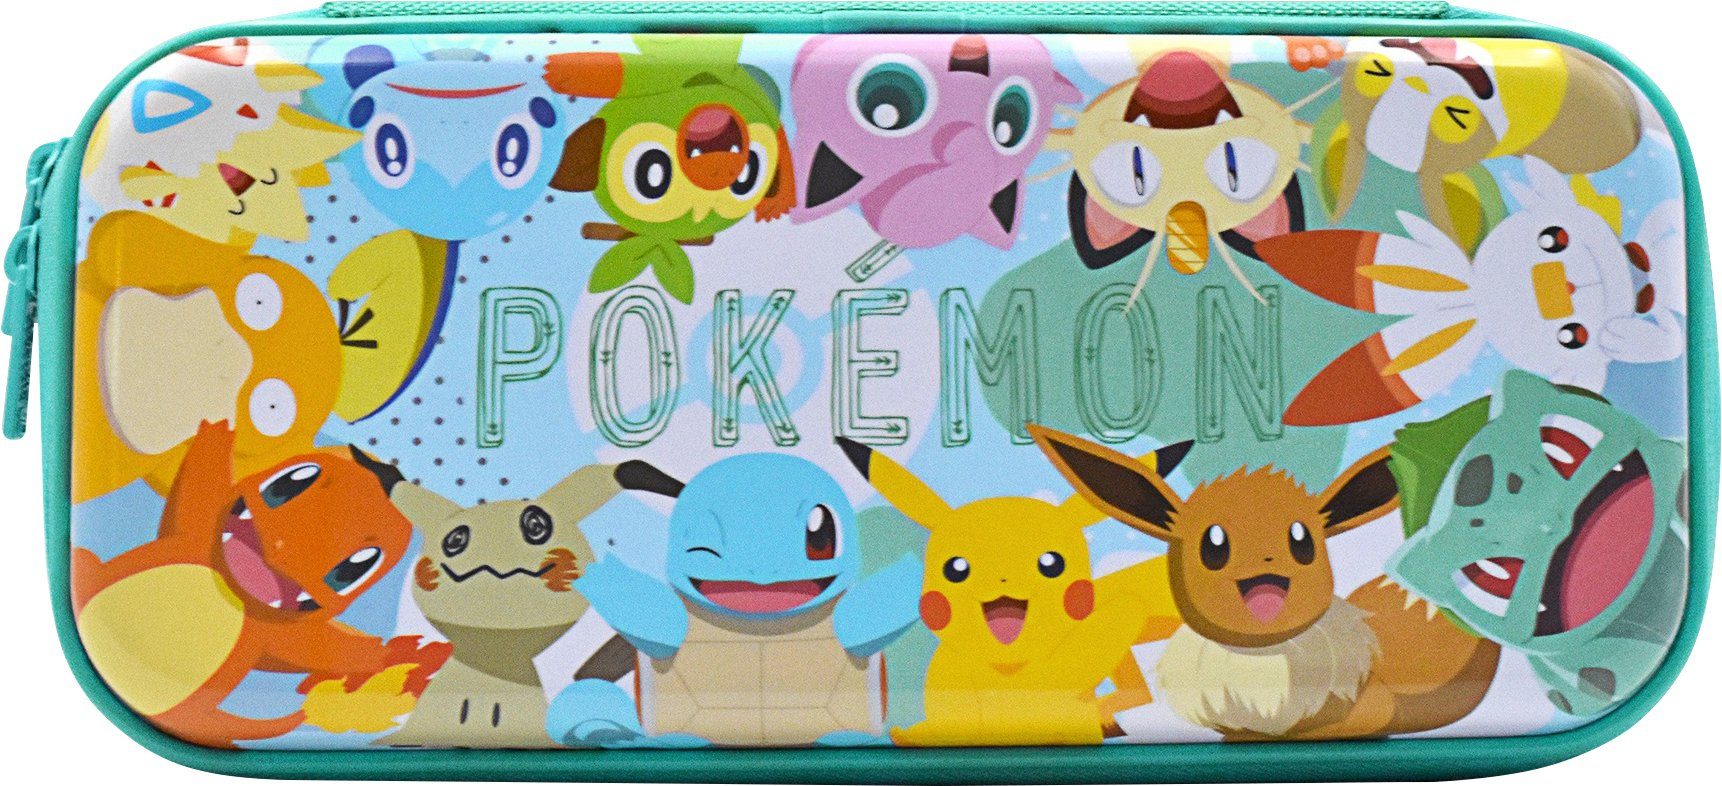 & Tasche Friends Edition Hori - Switch Spielekonsolen-Tasche Vault Case Nintendo Pikachu